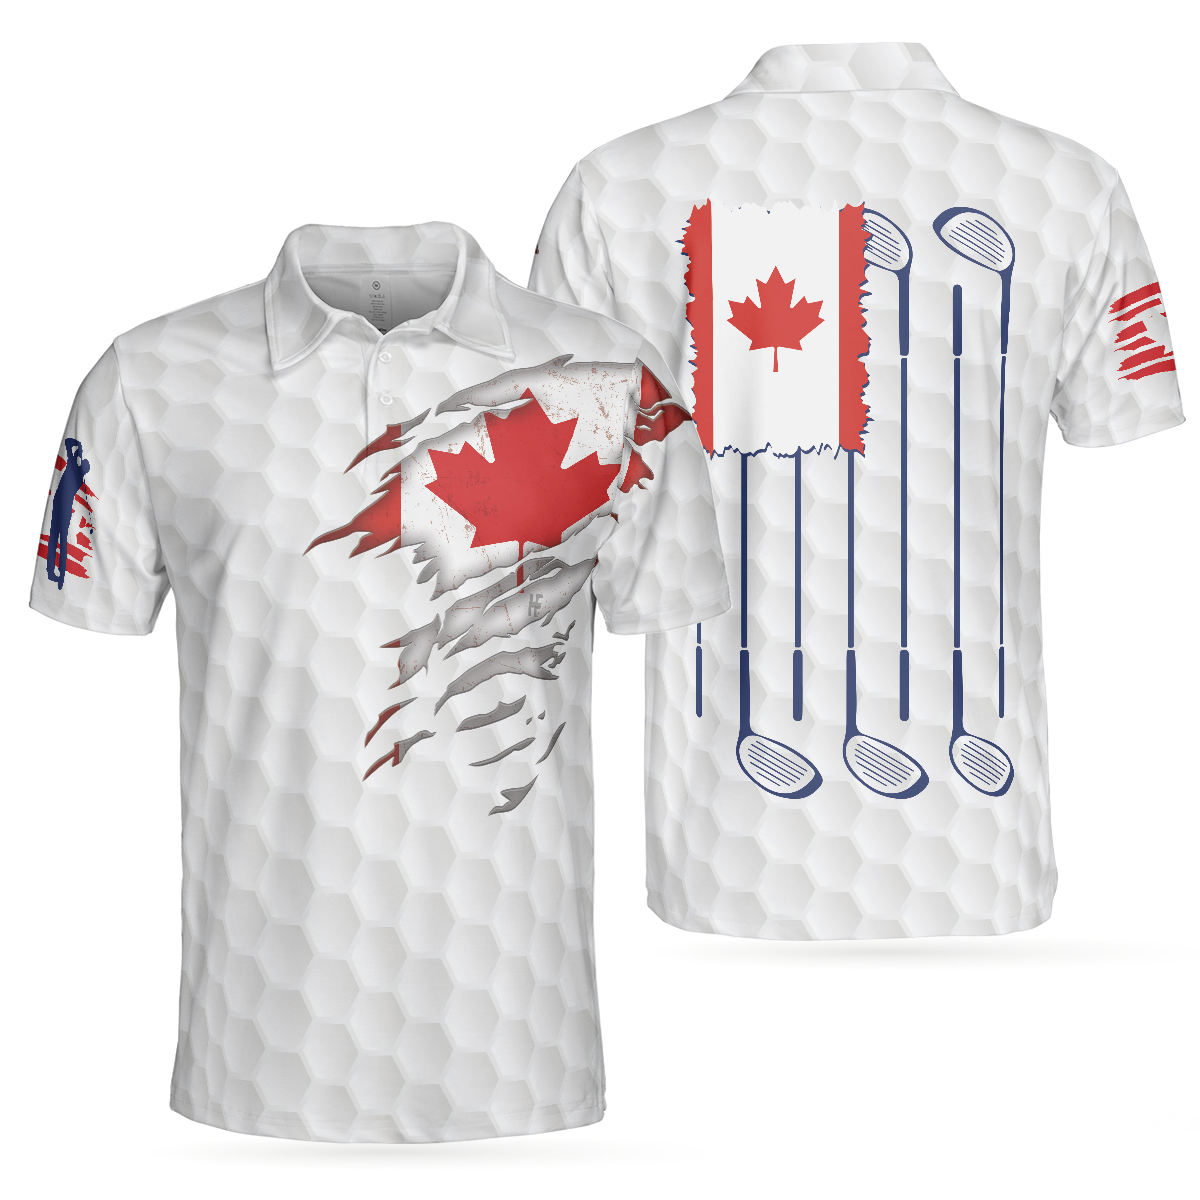 Men Golf Polo Shirt - Golf Canada Flag Polo Shirt, Red Maple Leaf Golfing Polo Shirt, Canadian Golf Shirt For Men, Golfers